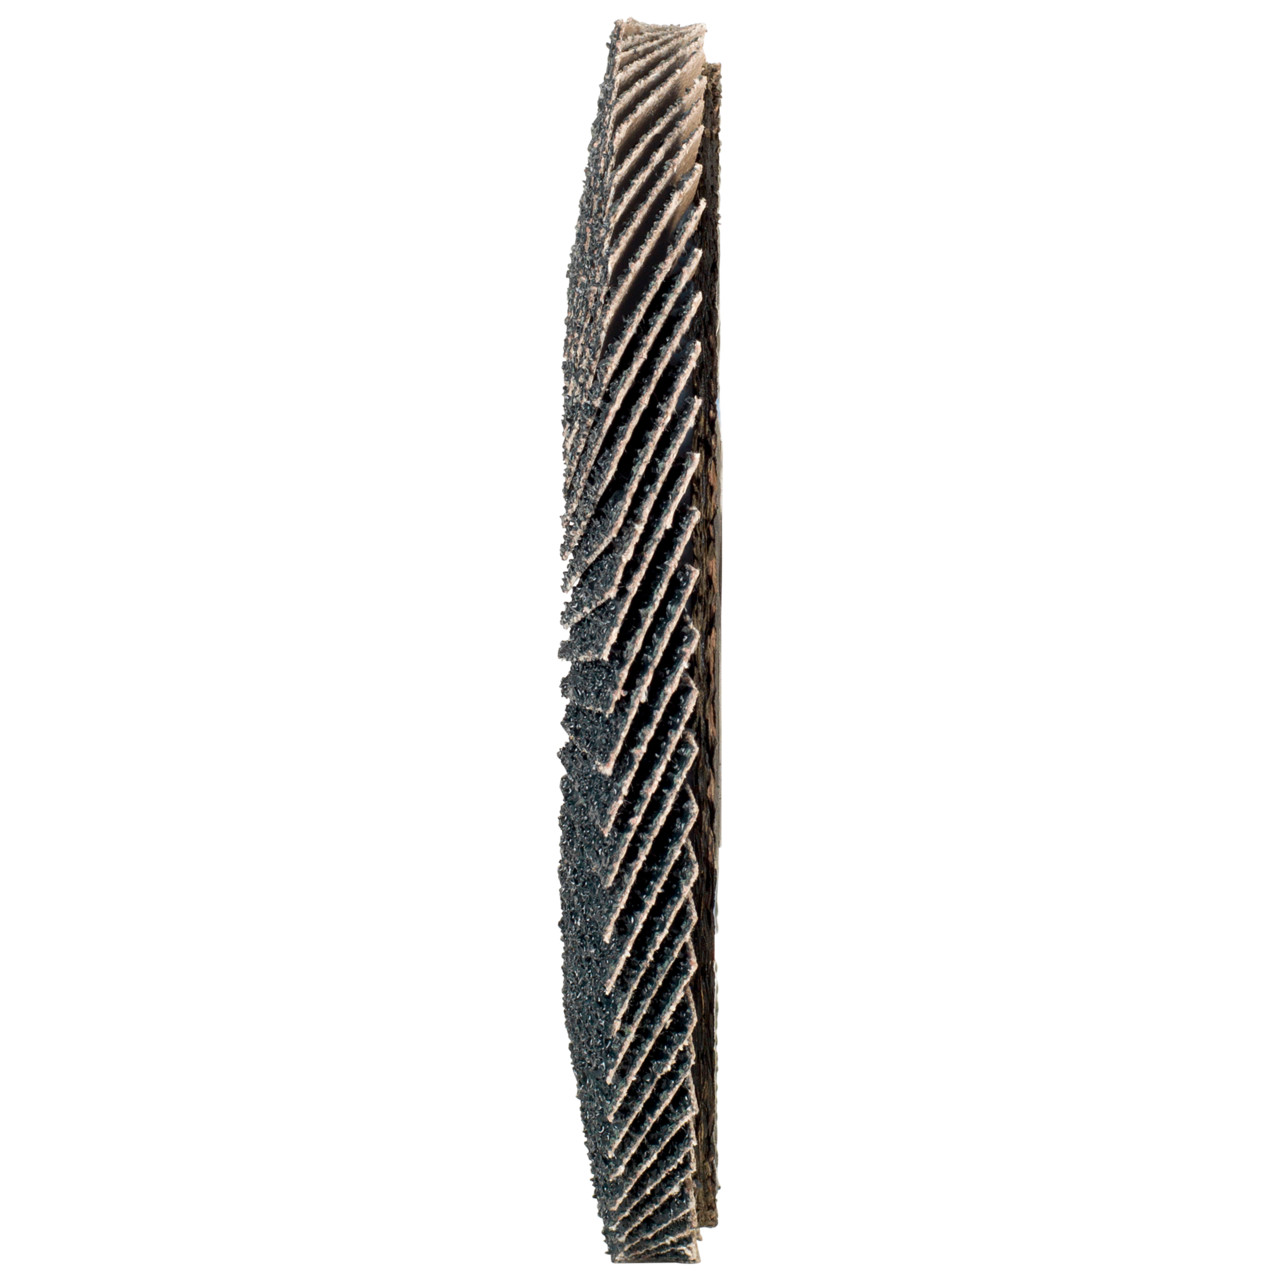 TYROLIT Fächerscheibe DxH 150x22,2 2in1 für Stahl & Edelstahl, P80, Form: 27A - gekröpfte Ausführung (Glasfaserträgerkörperausführung), Art. 519214